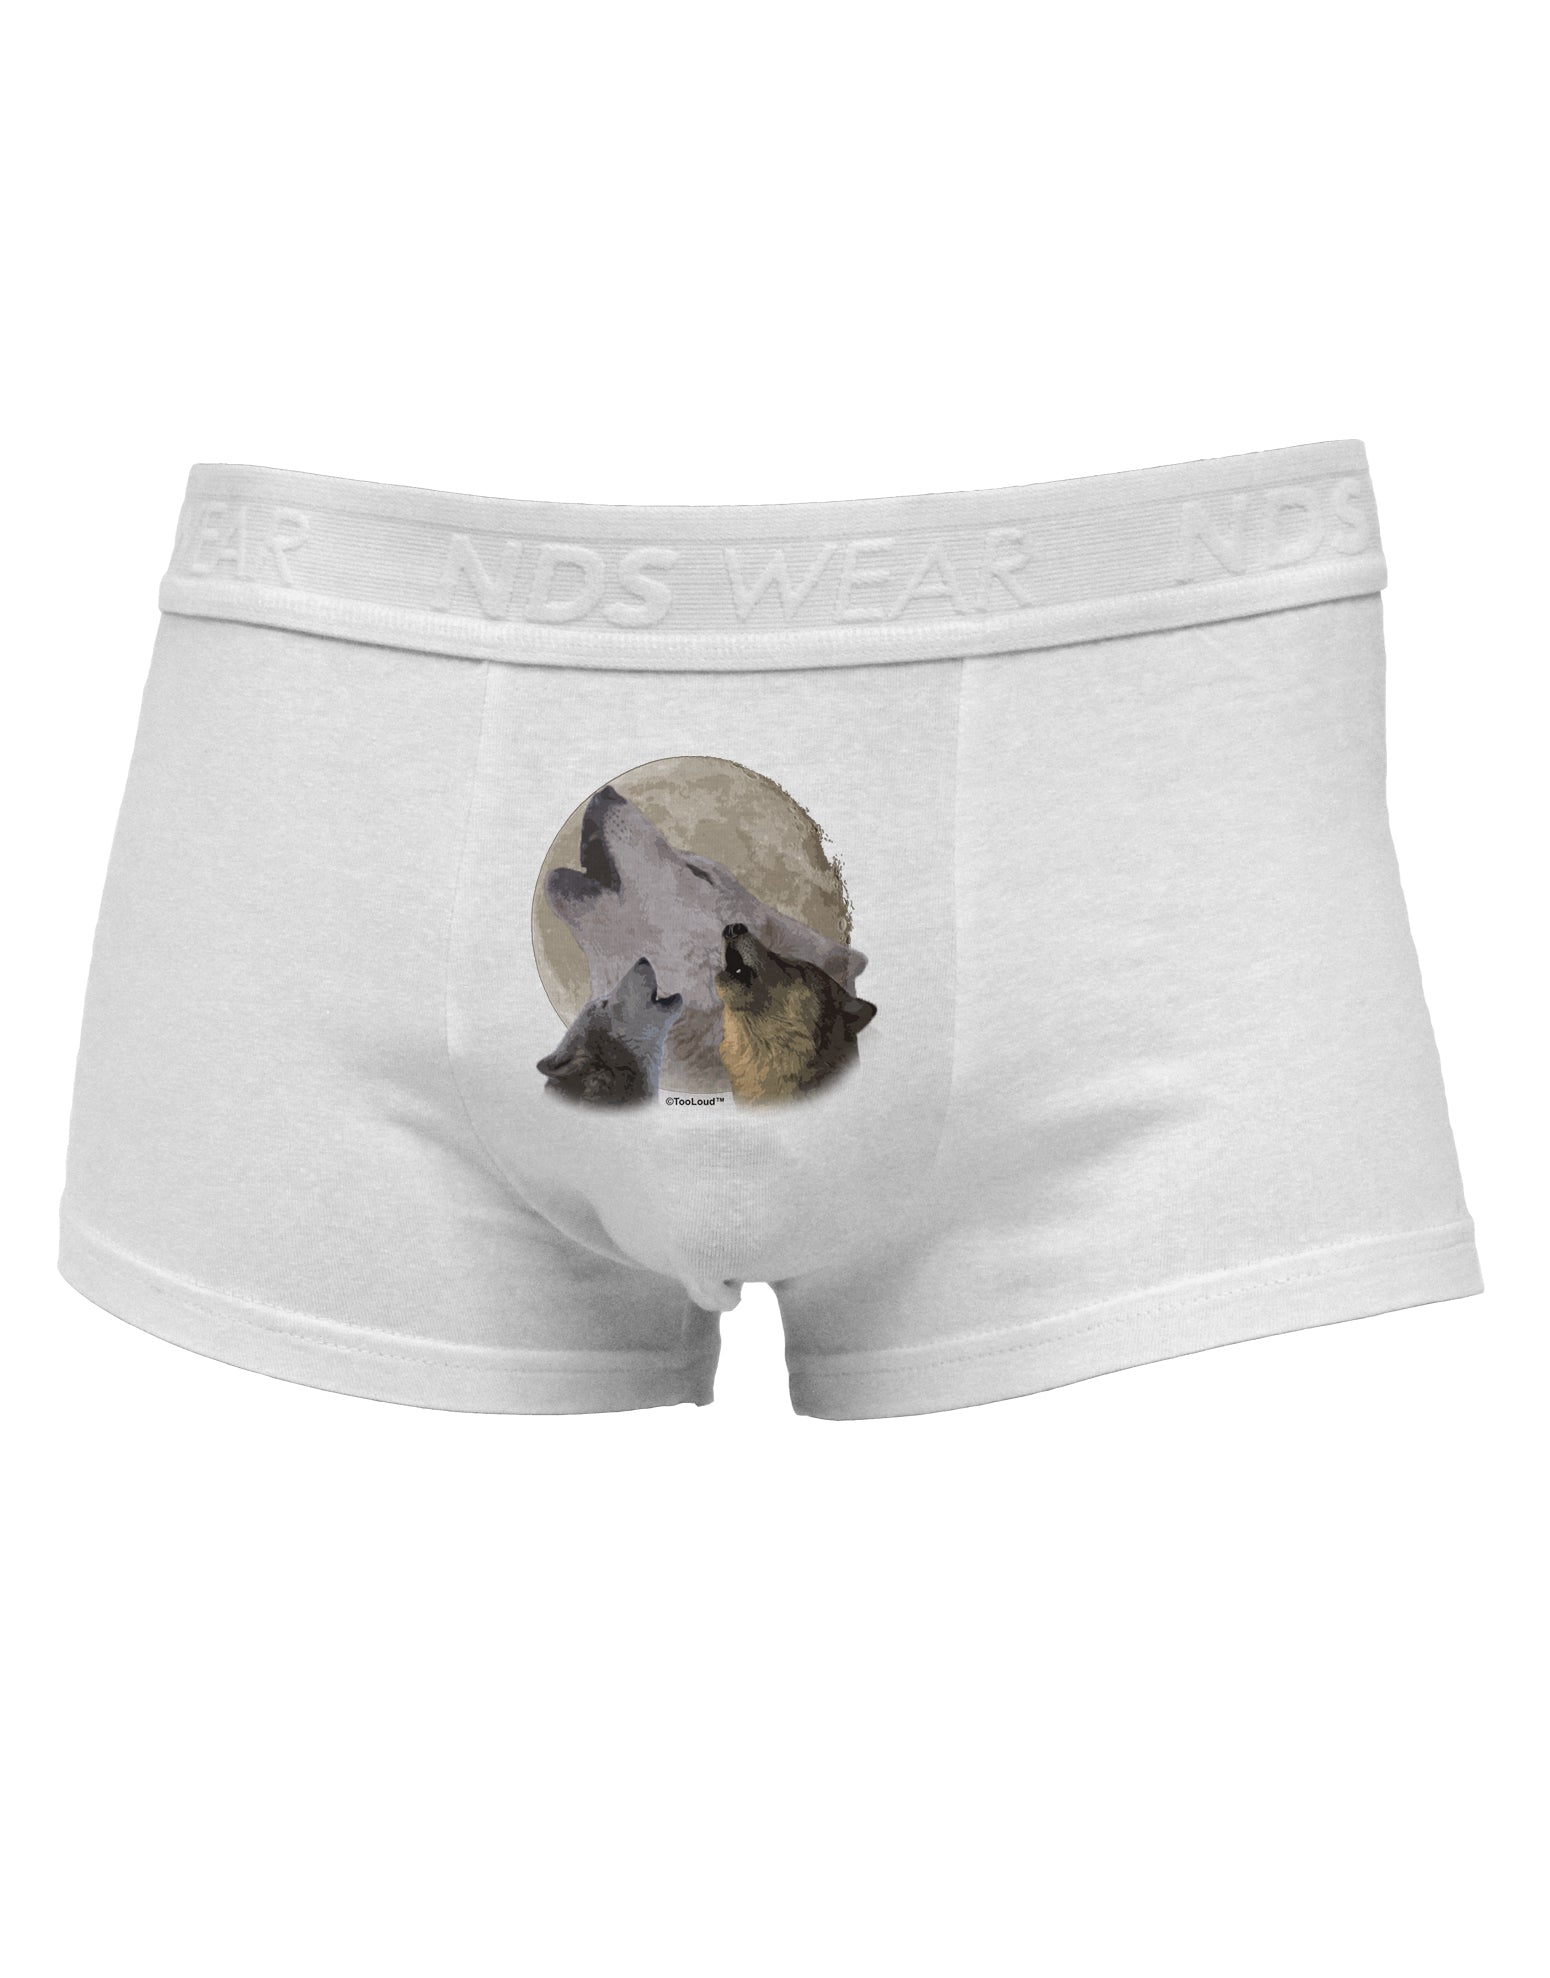 Howling Wolf Boxer Brief Underwear